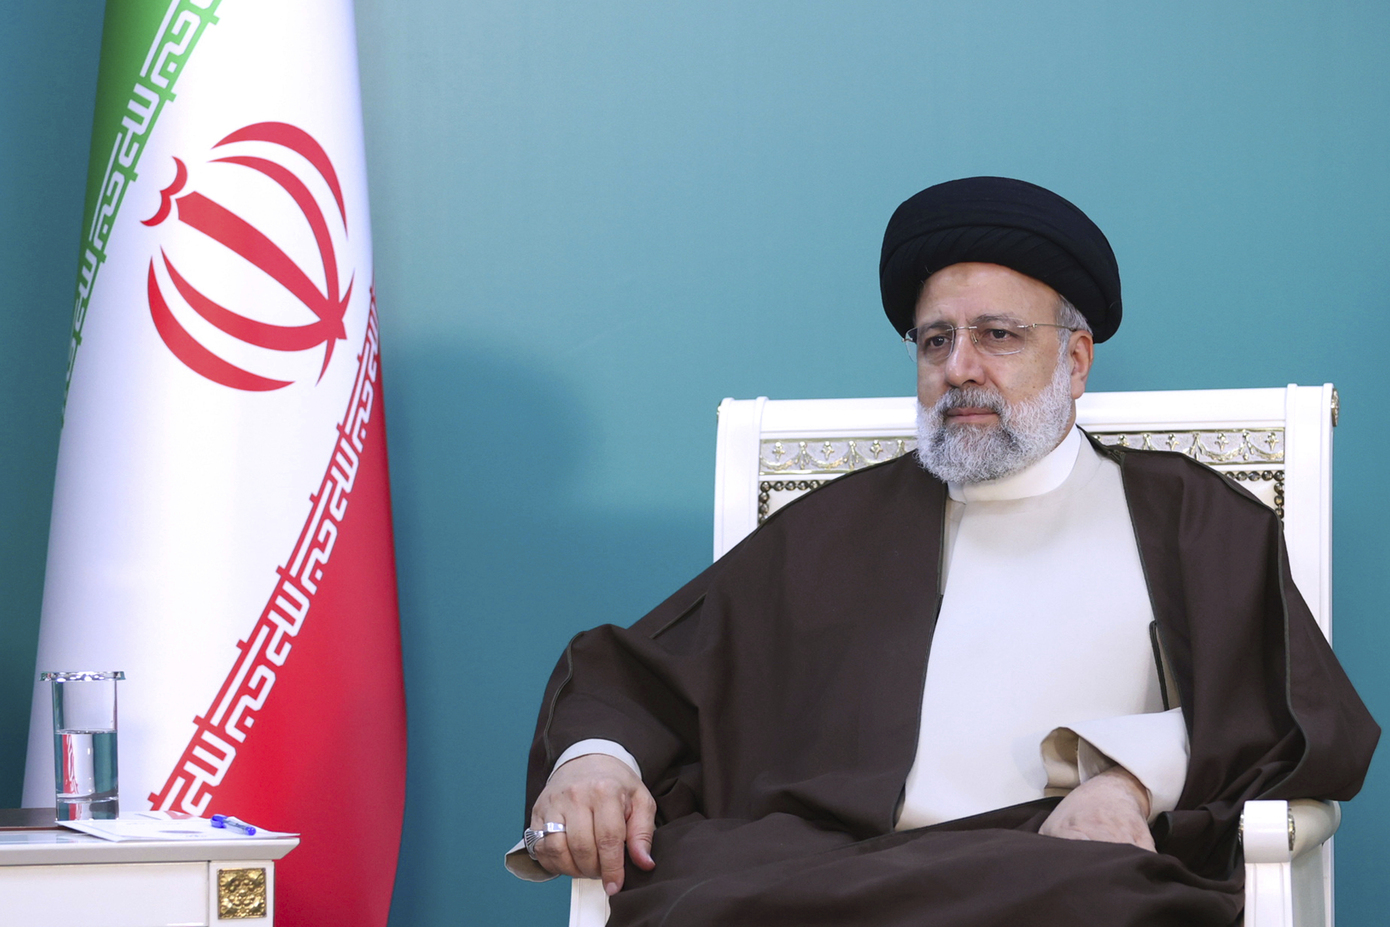 Τι προβλέπουν οι νόμοι του Ιράν όταν πεθάνει ένας εν ενεργεία πρόεδρος